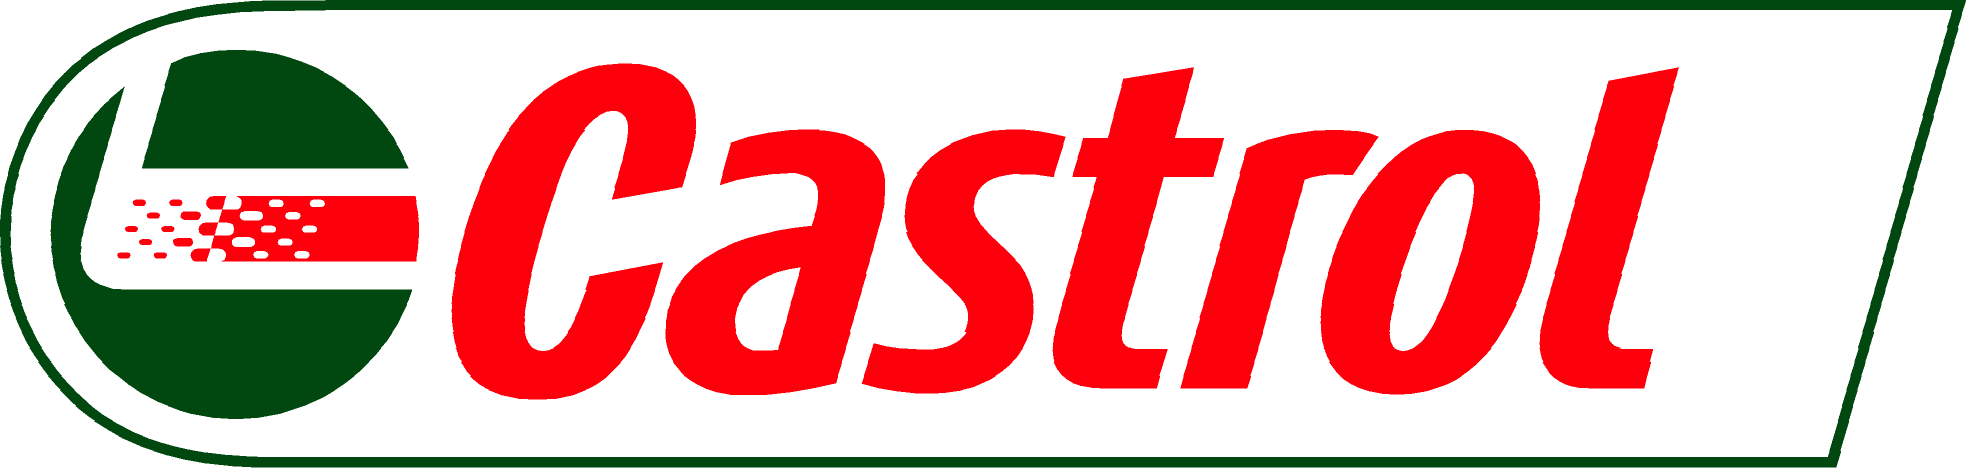 Castrol Aquasol 2000-1